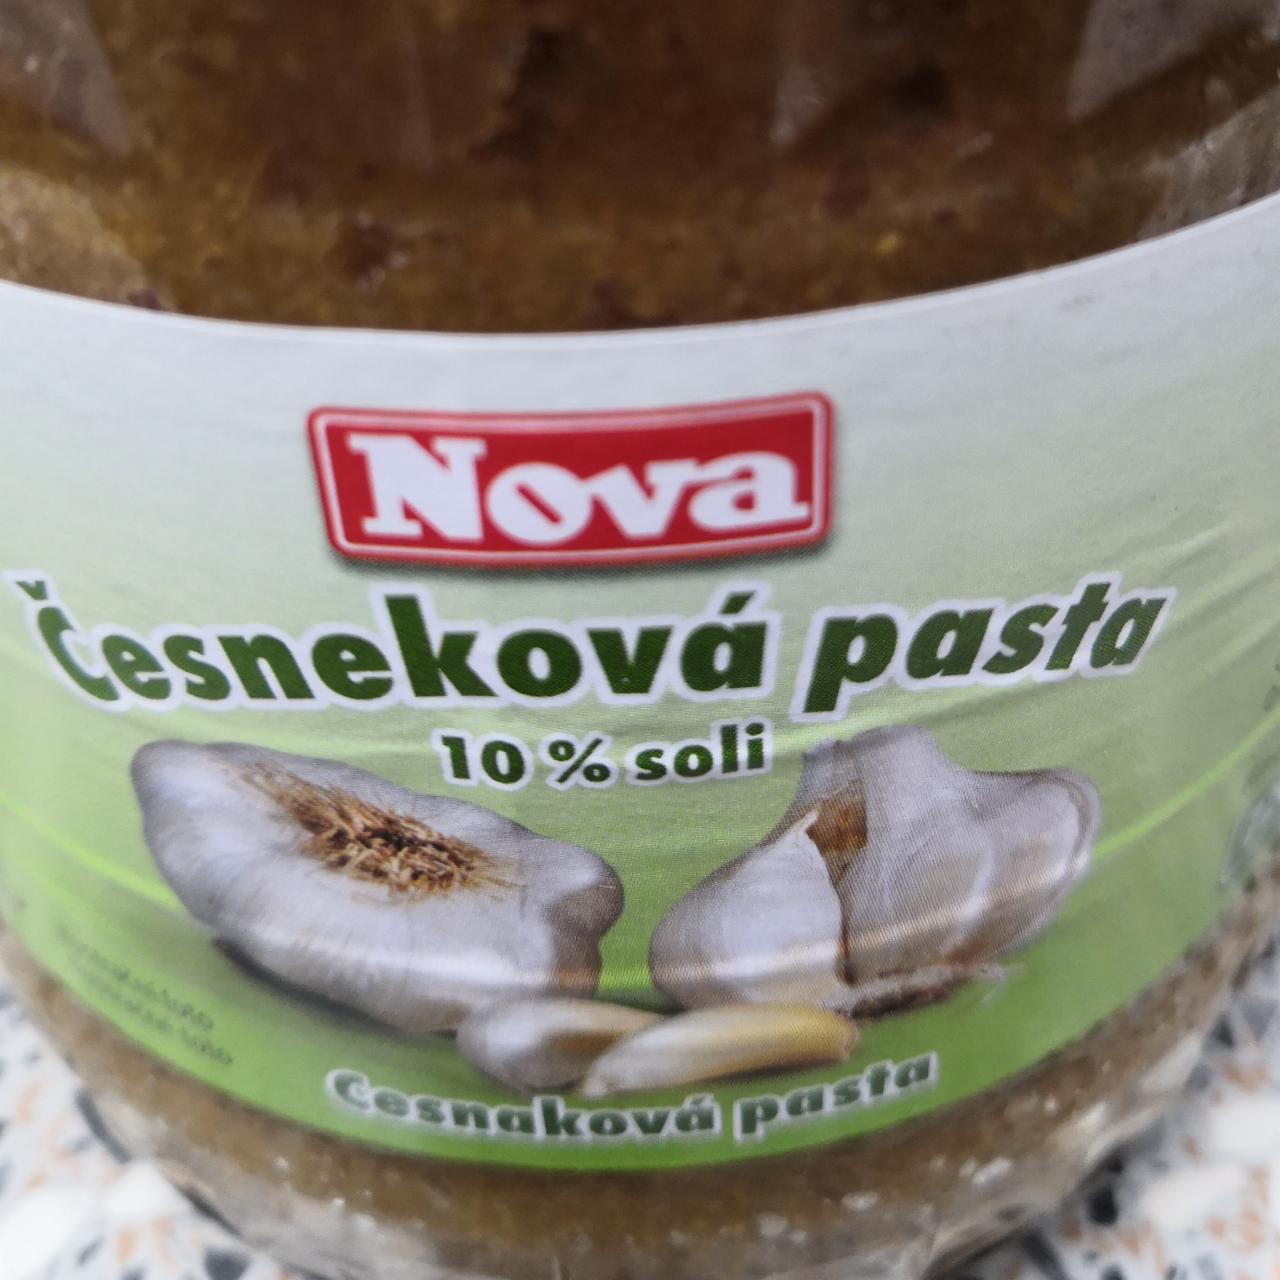 Fotografie - Česneková pasta 10% soli Nova